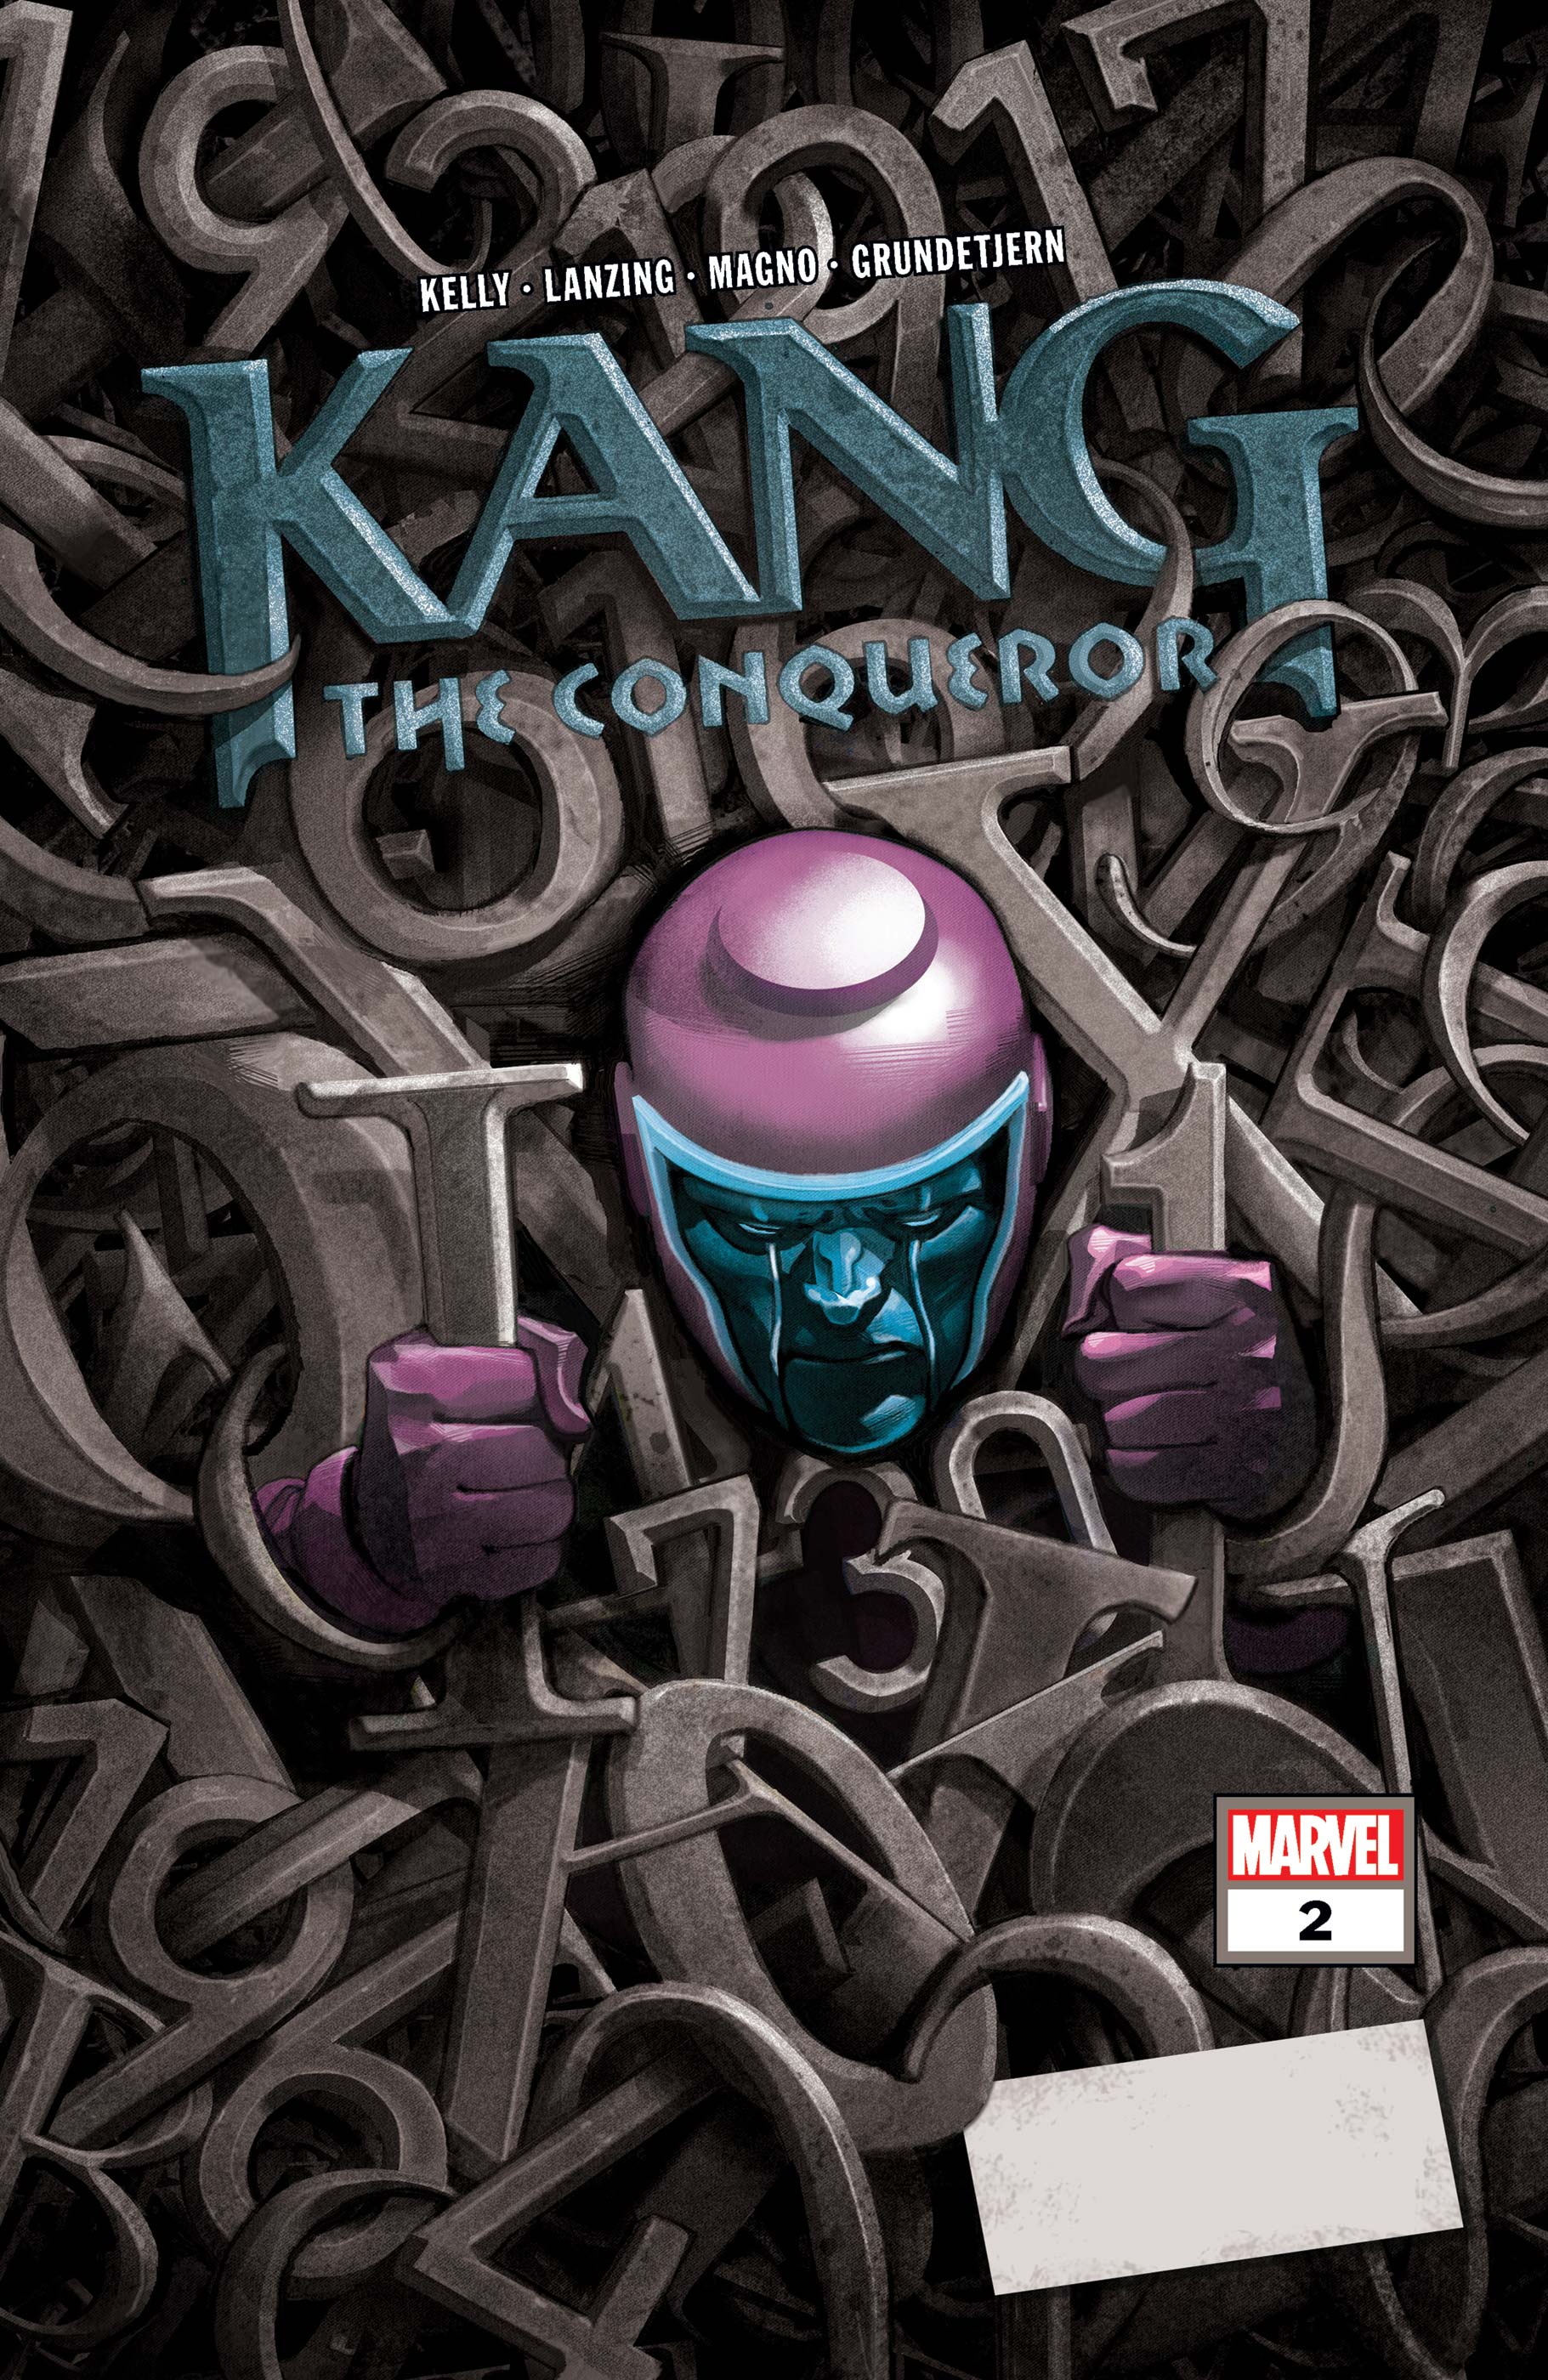 Kang the Conqueror (2021) #2